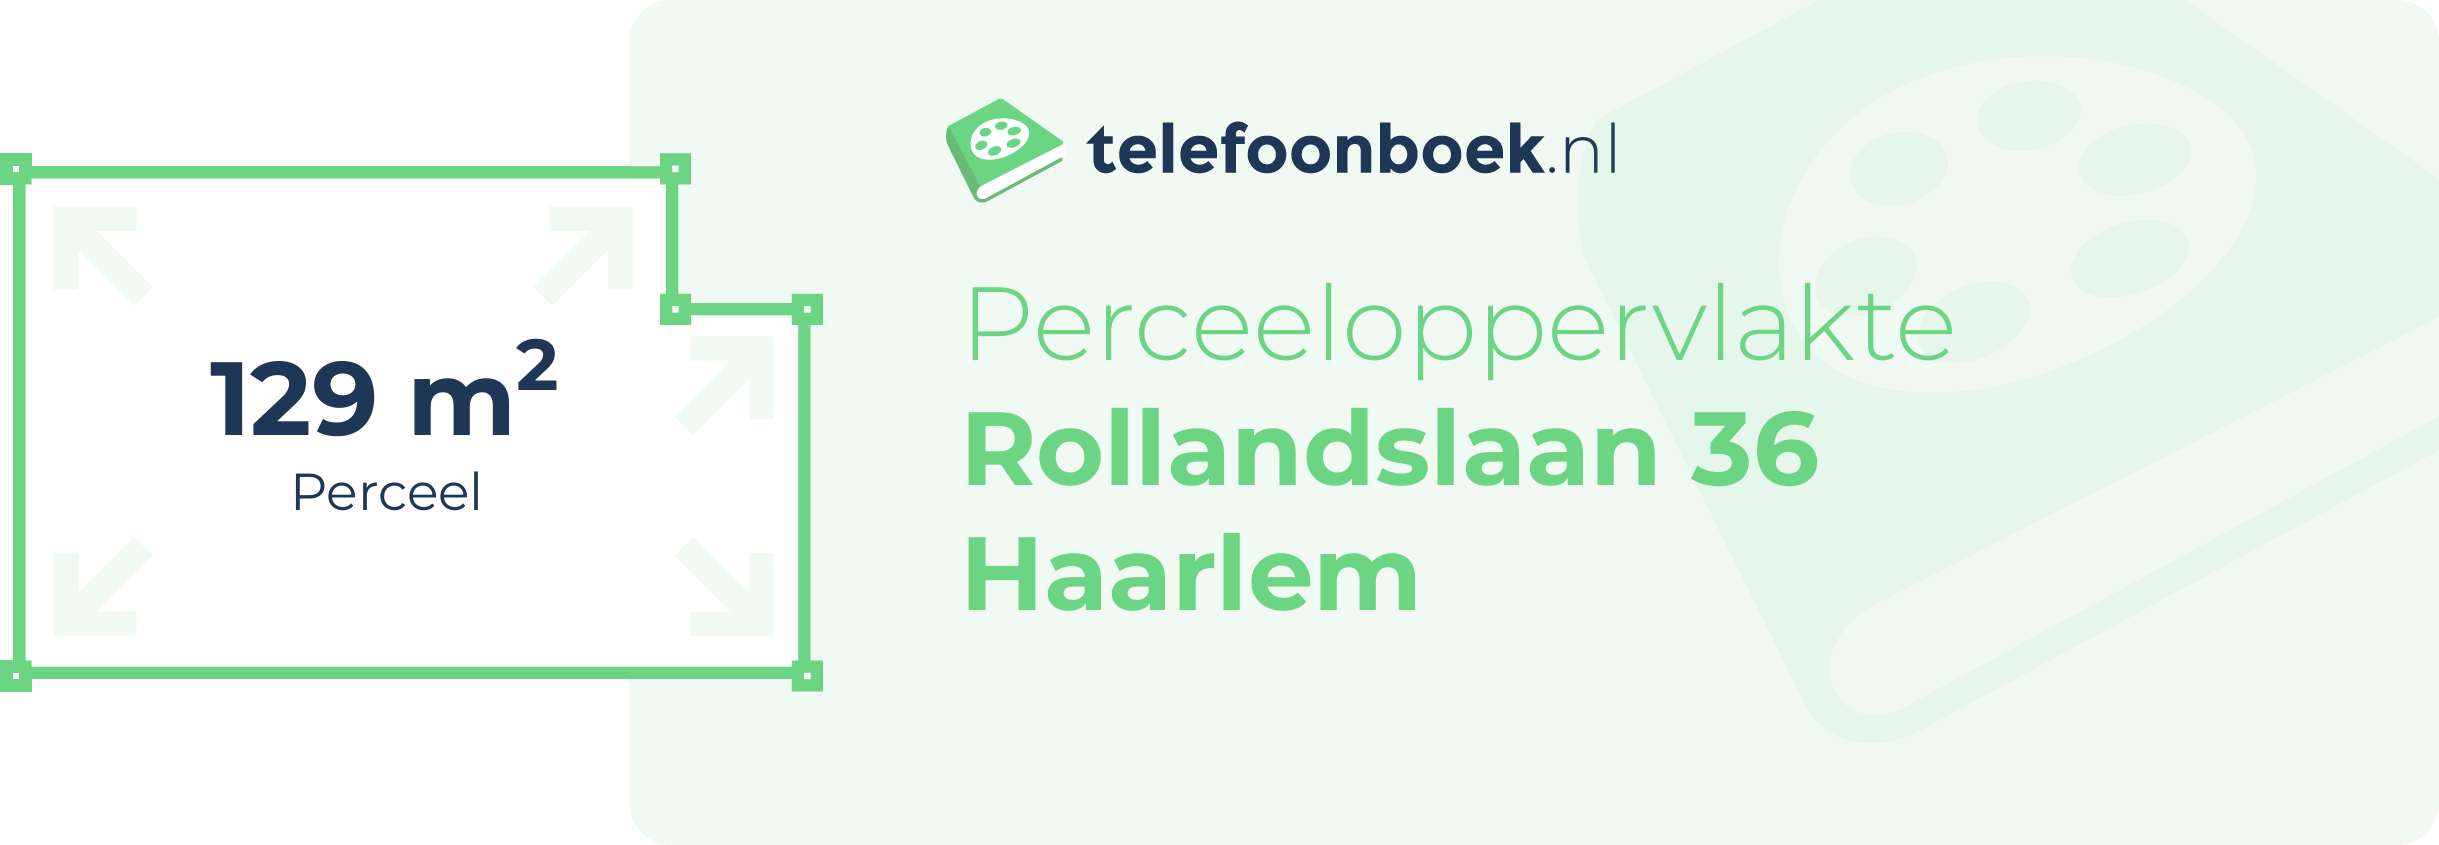 Perceeloppervlakte Rollandslaan 36 Haarlem